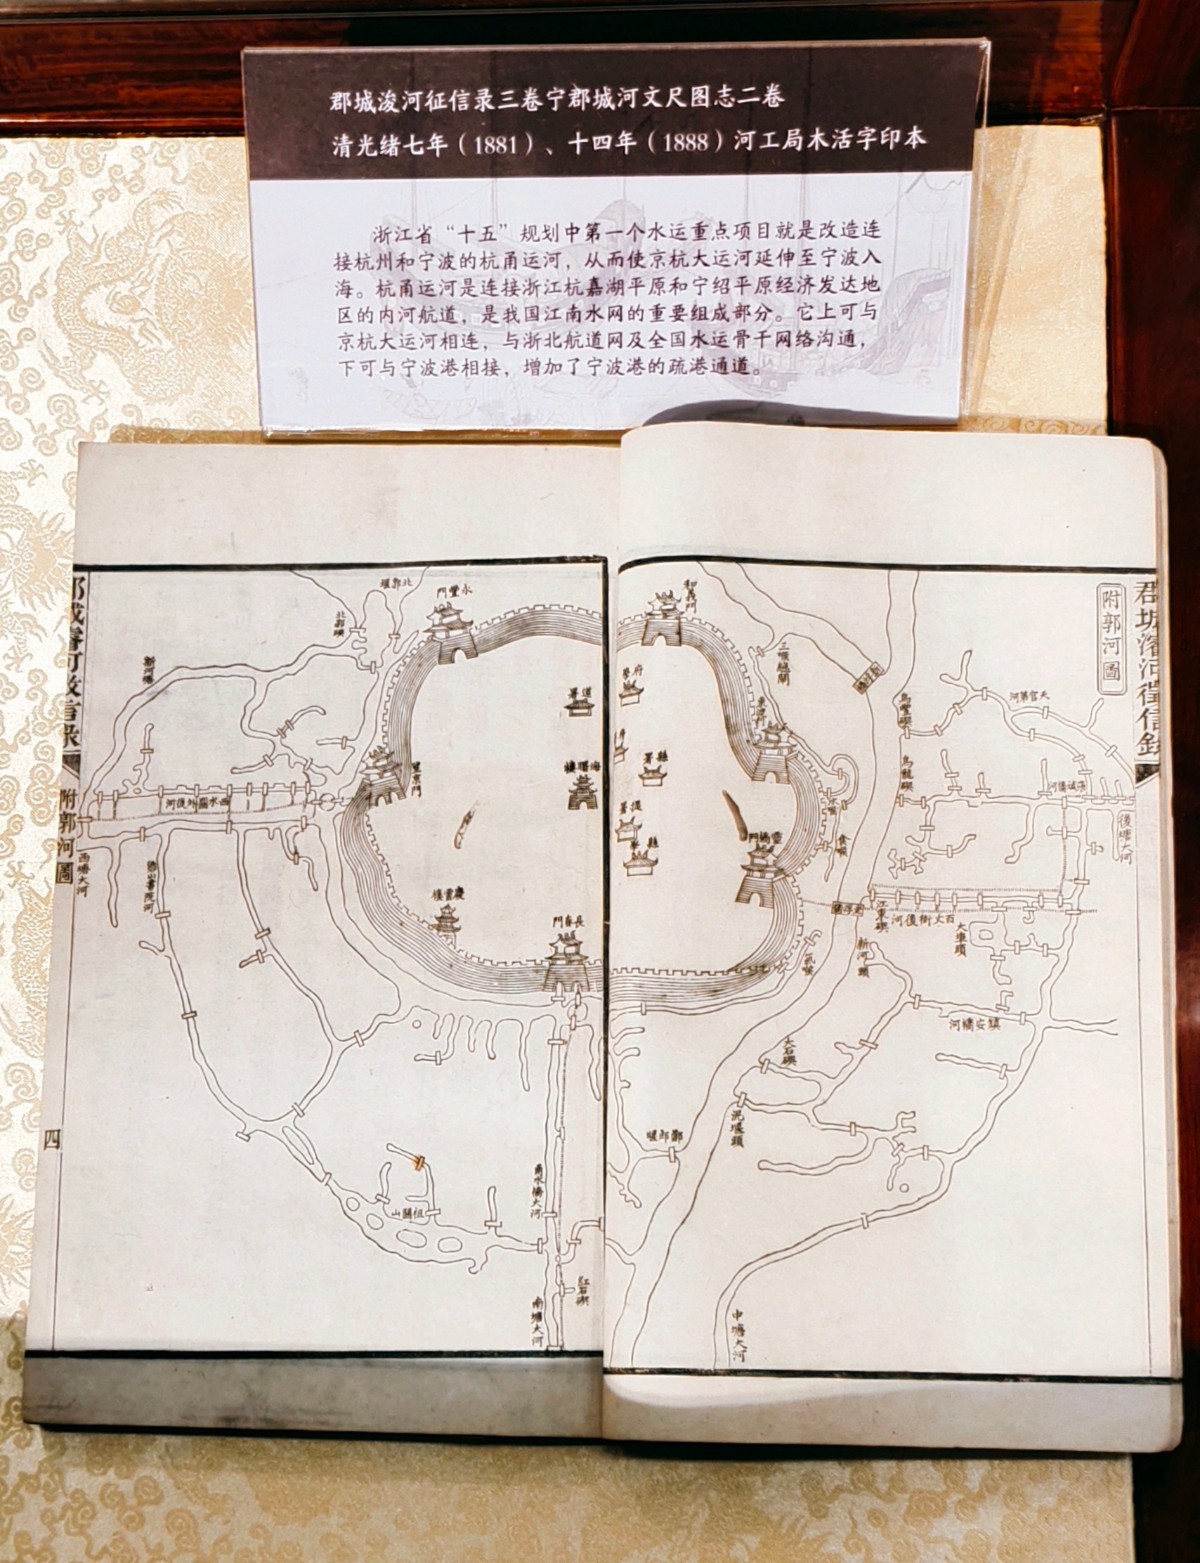 京浙两地精选60余种大运河文献首图展出